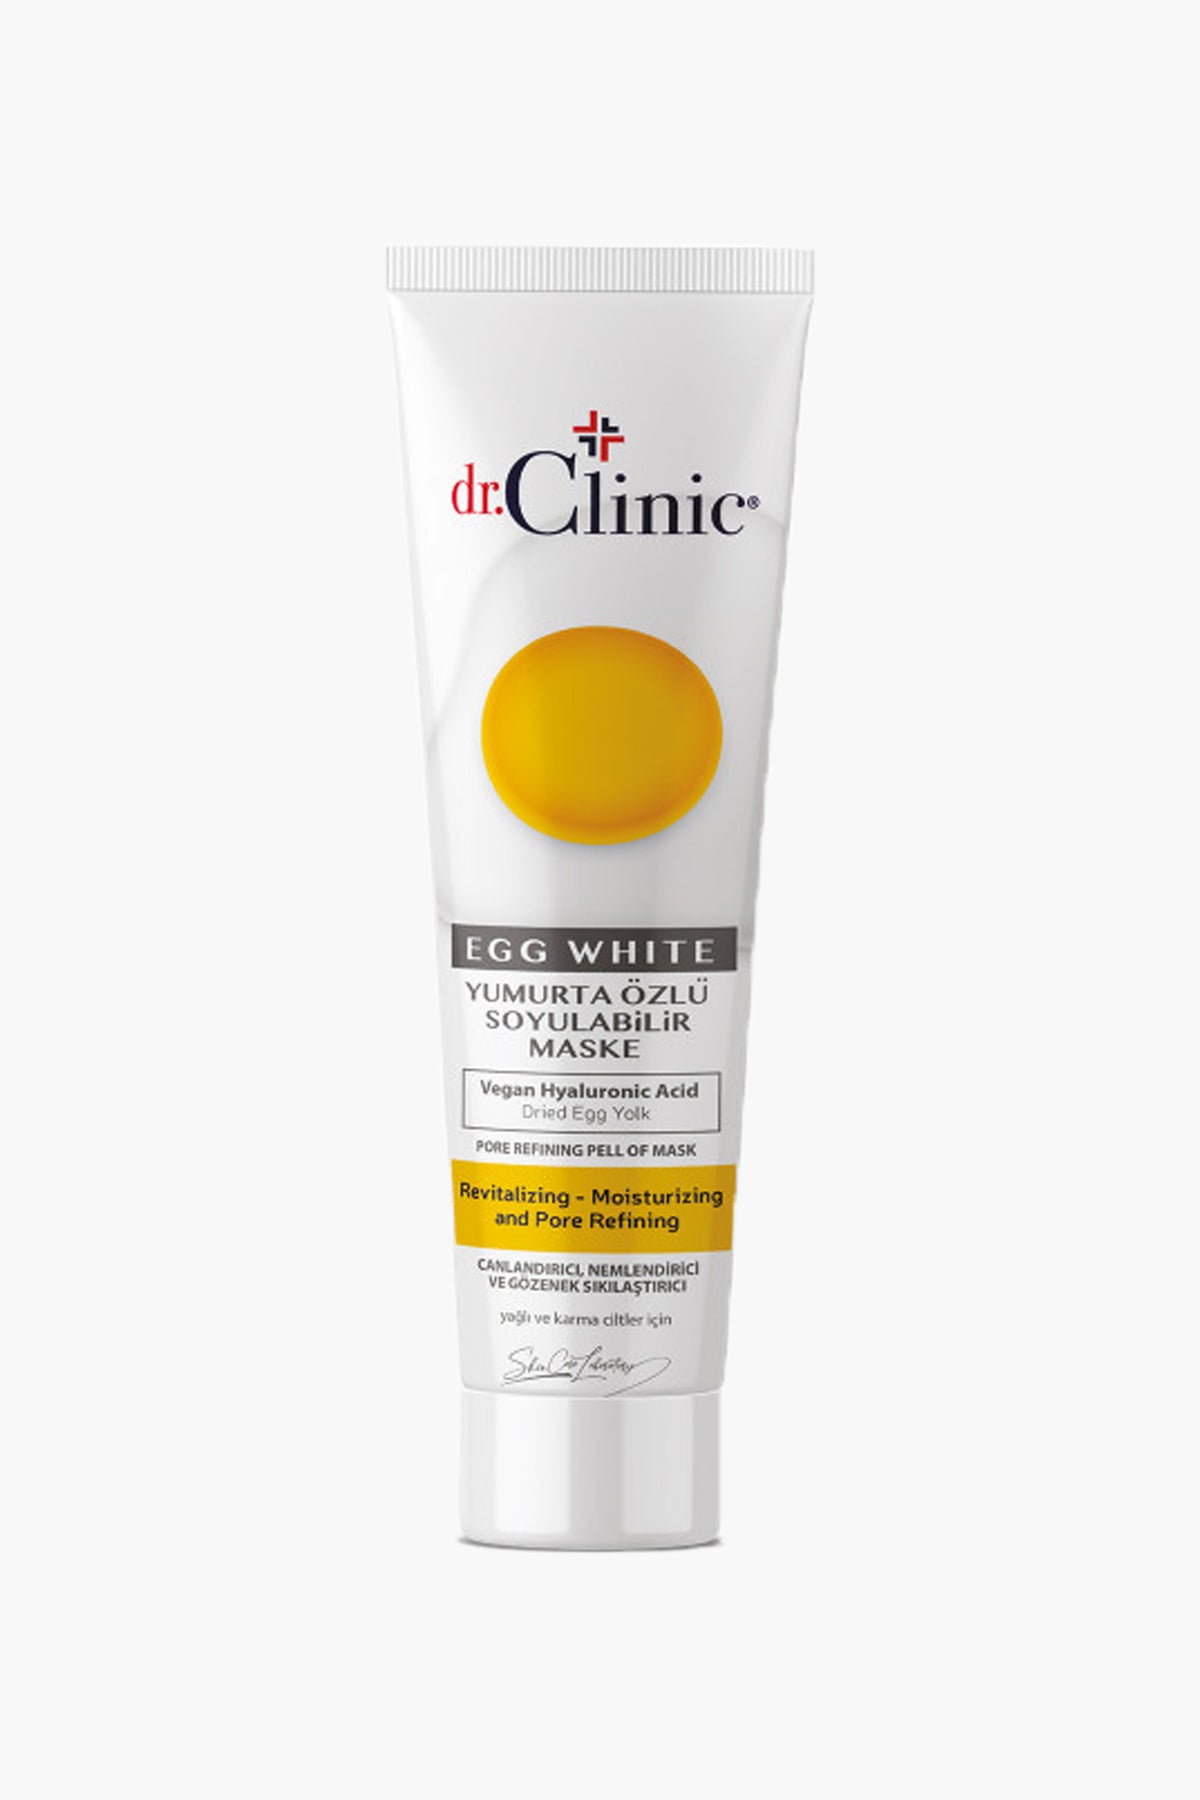 Egg White Pore Refining Peel Off Mask - 100 ml - Dr.Clinic